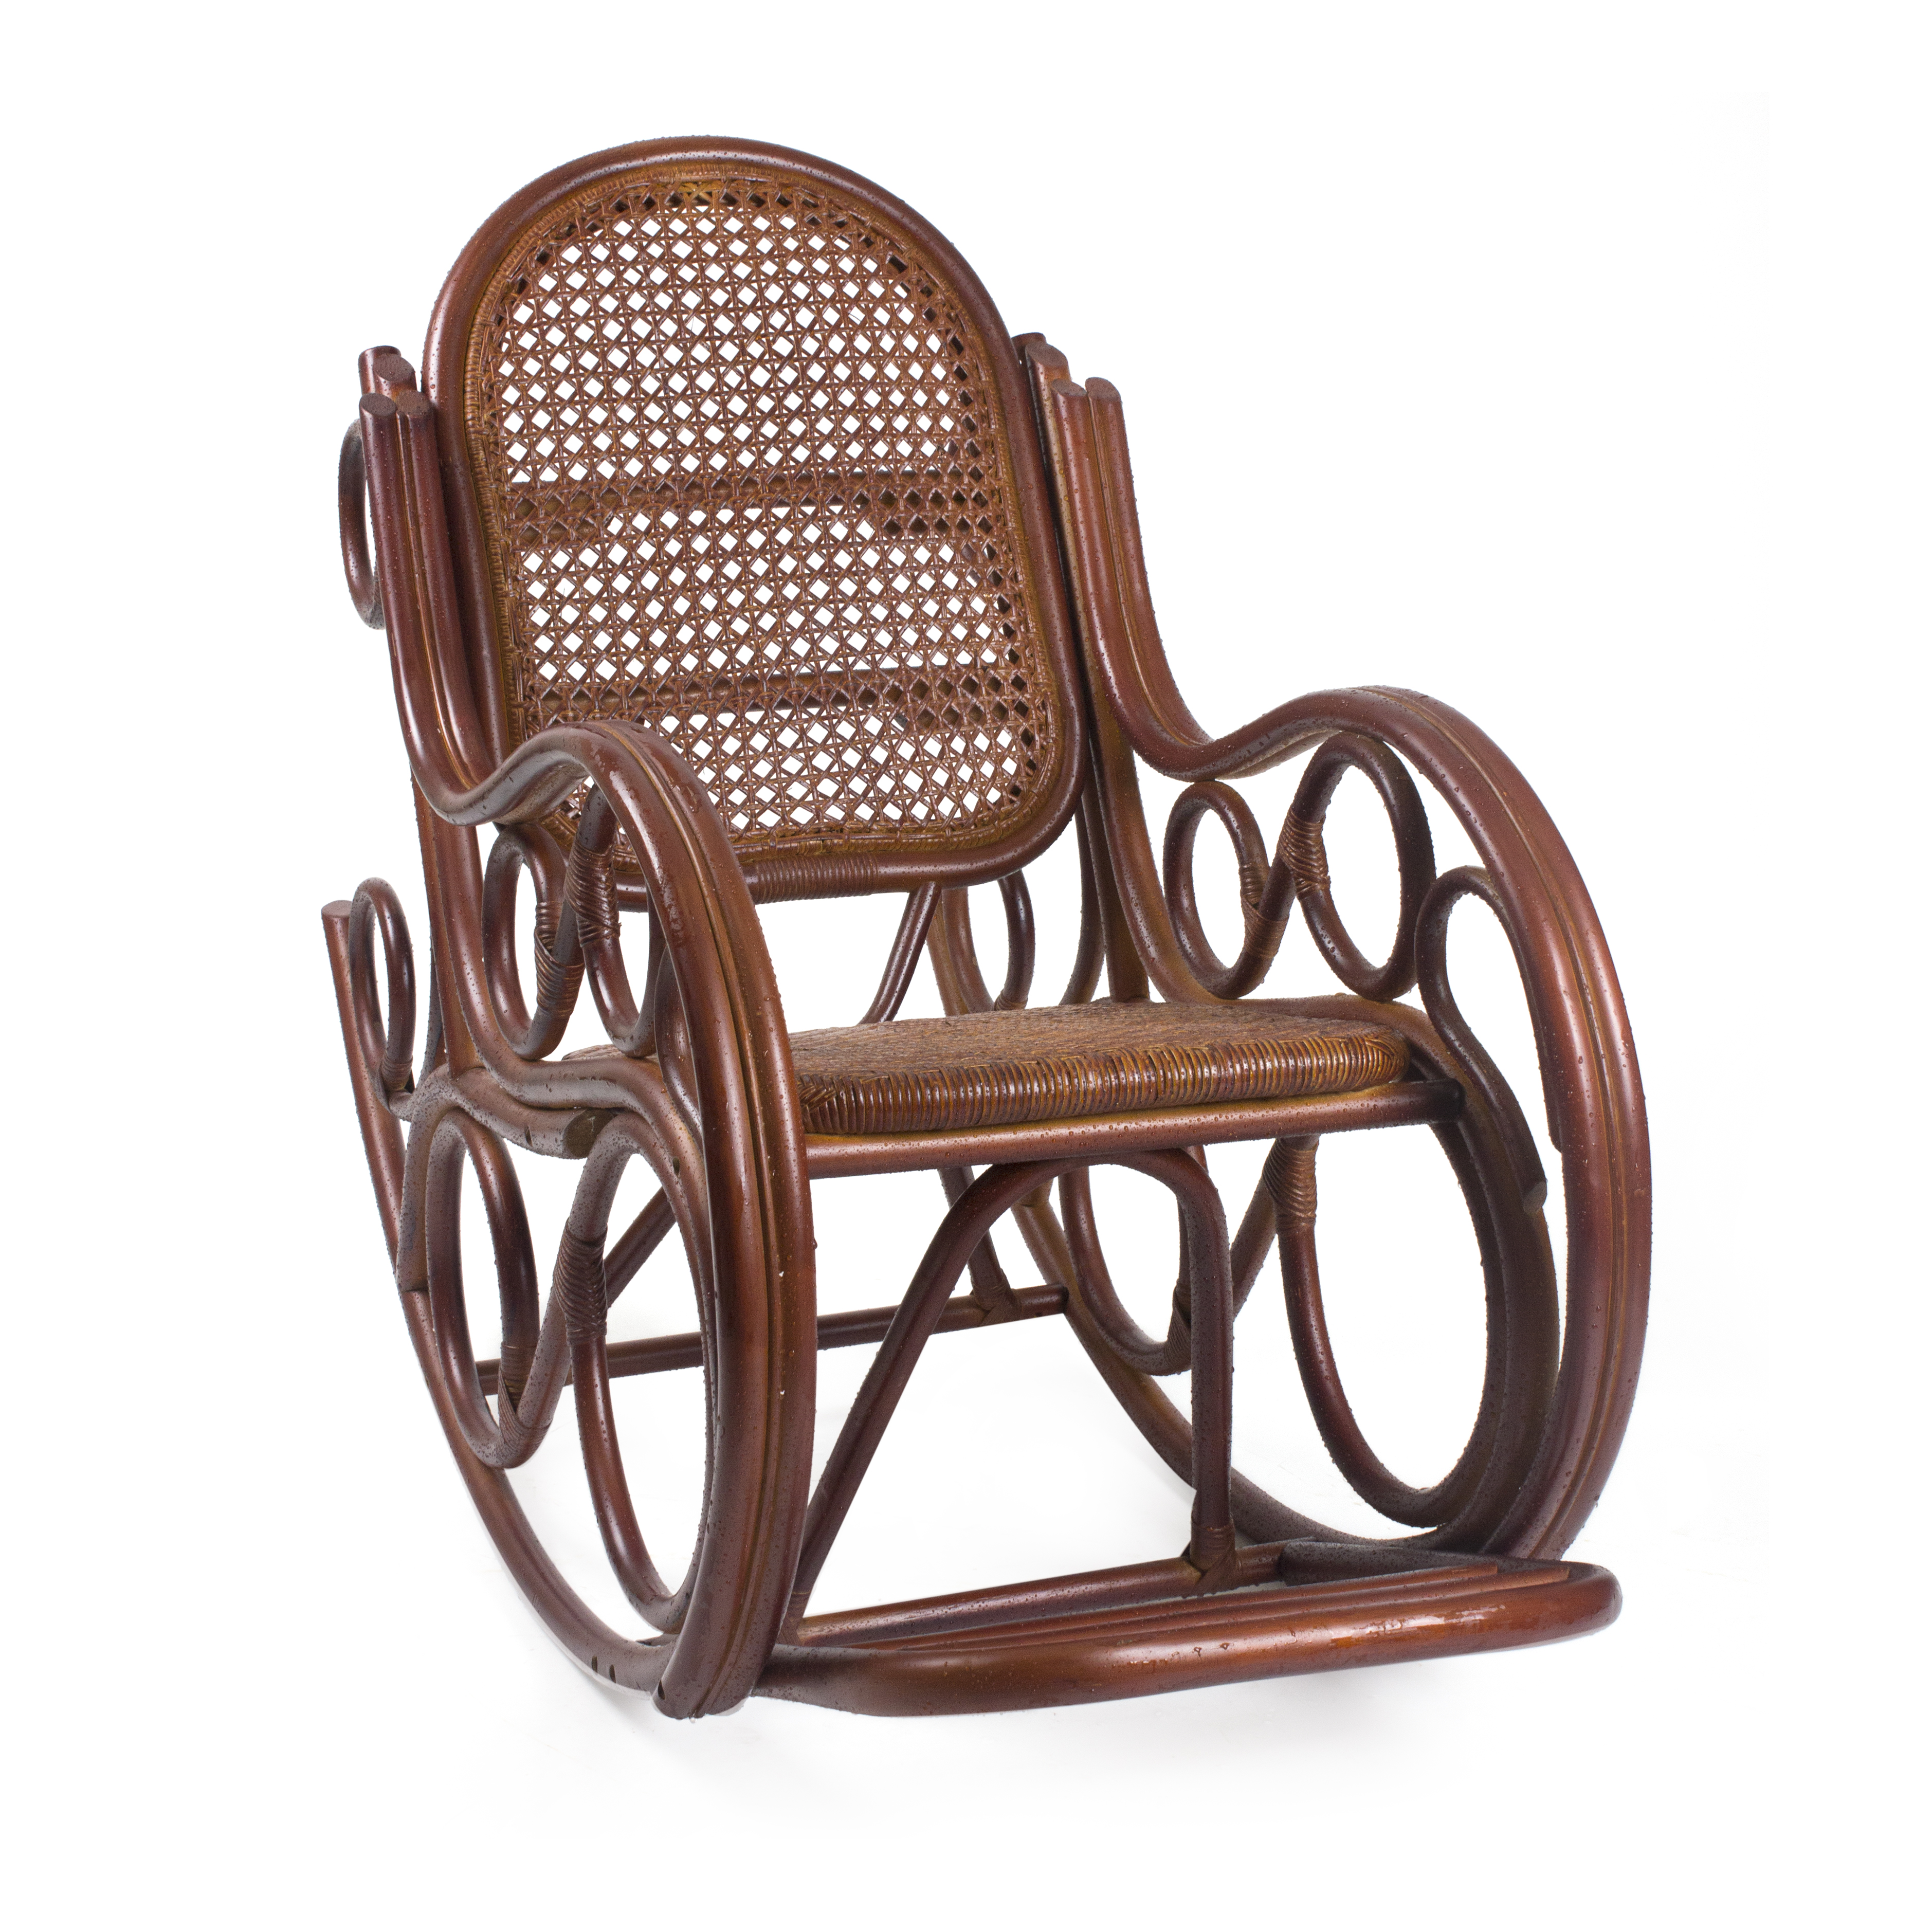 Кресло качалка купить от производителя. Mebel Impex кресло качалка. Кресло-качалка RATTANDESIGN. Кресло-качалка Ведуга. Кресло-качалка из ротанга "05/17 промо" (Promo).